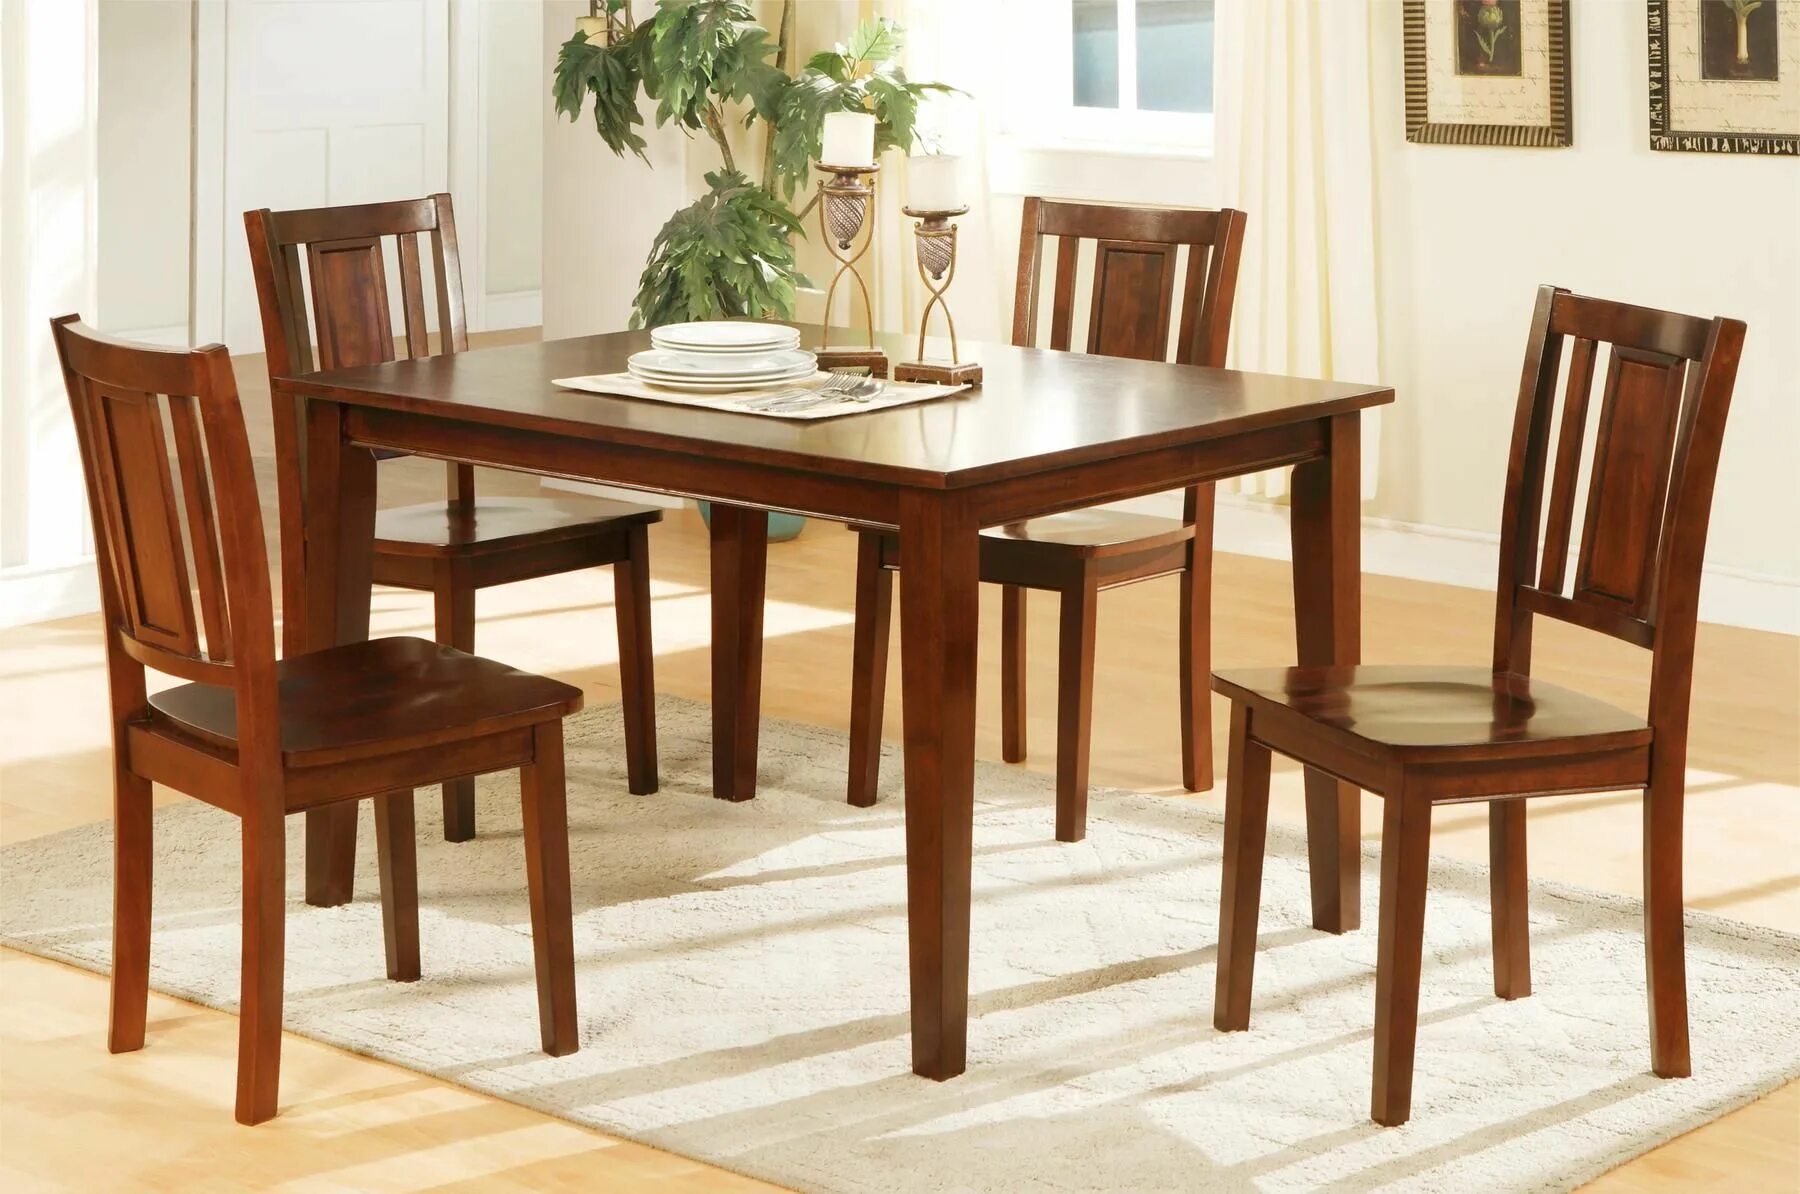 Столы и стулья. Кухонный стол и стулья. Стол кухонный деревянный. Деревянные столы и стулья для кухни.